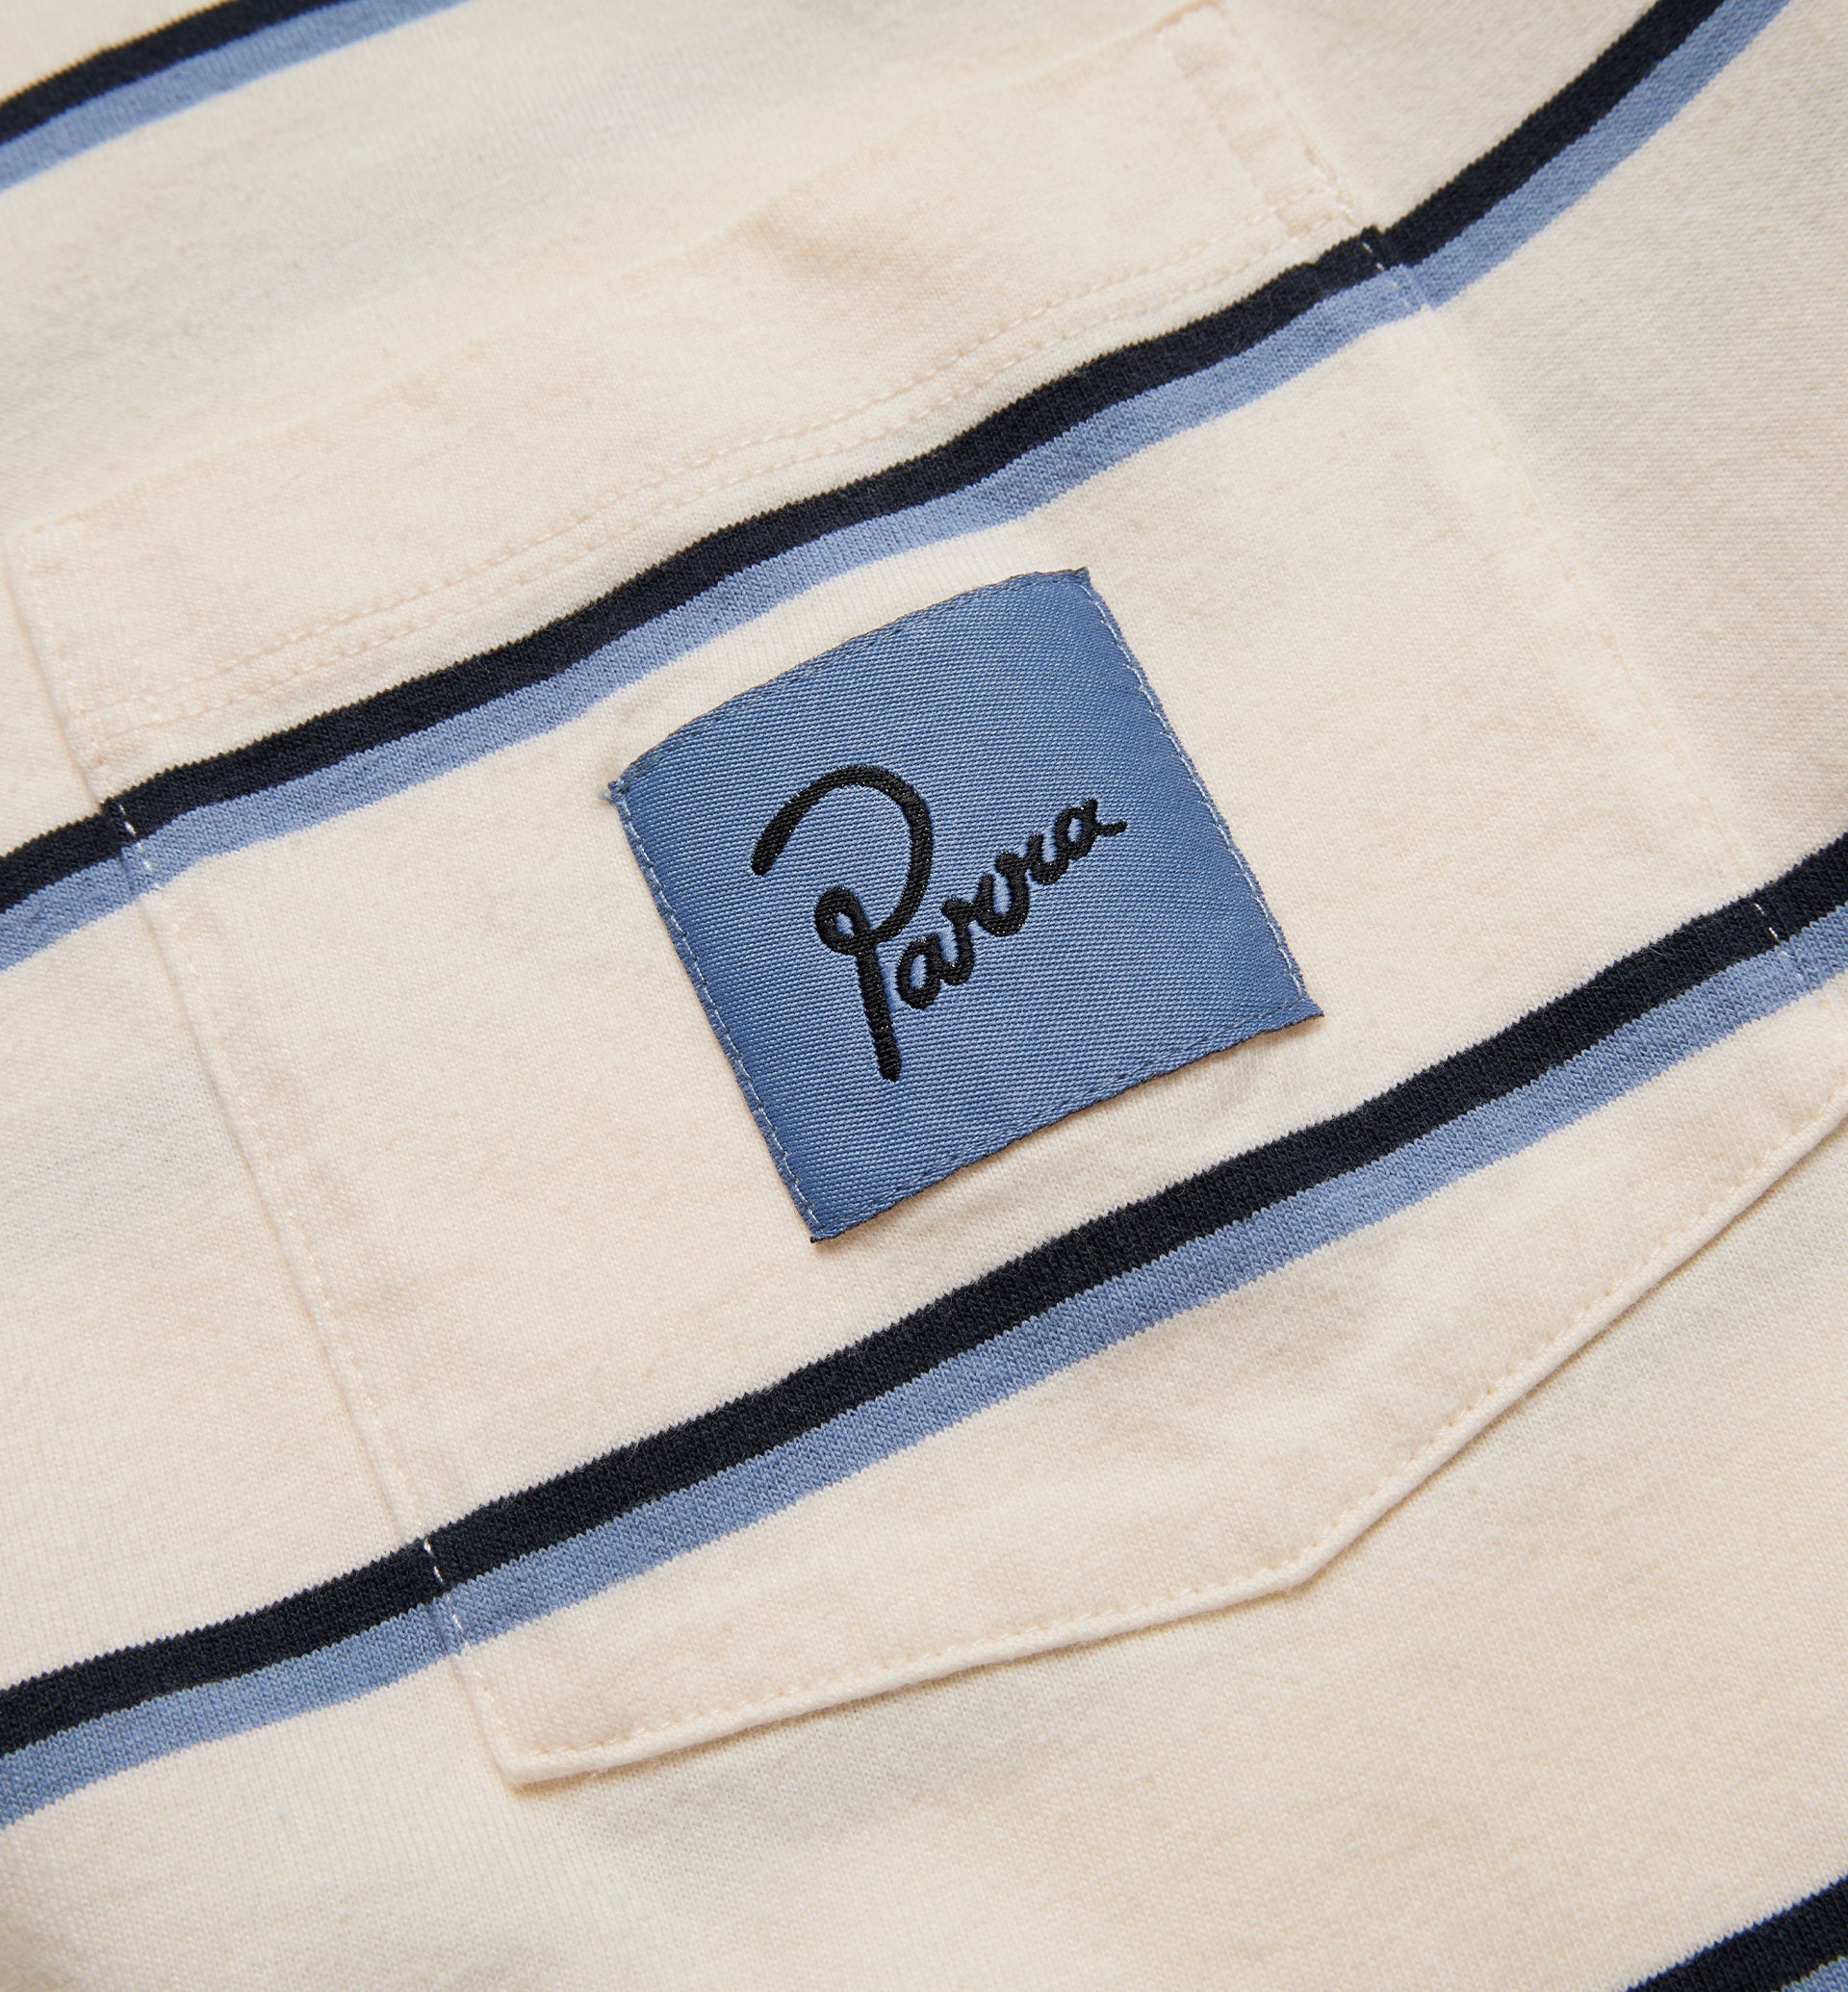 Parra - striper pocket logo t-shirt